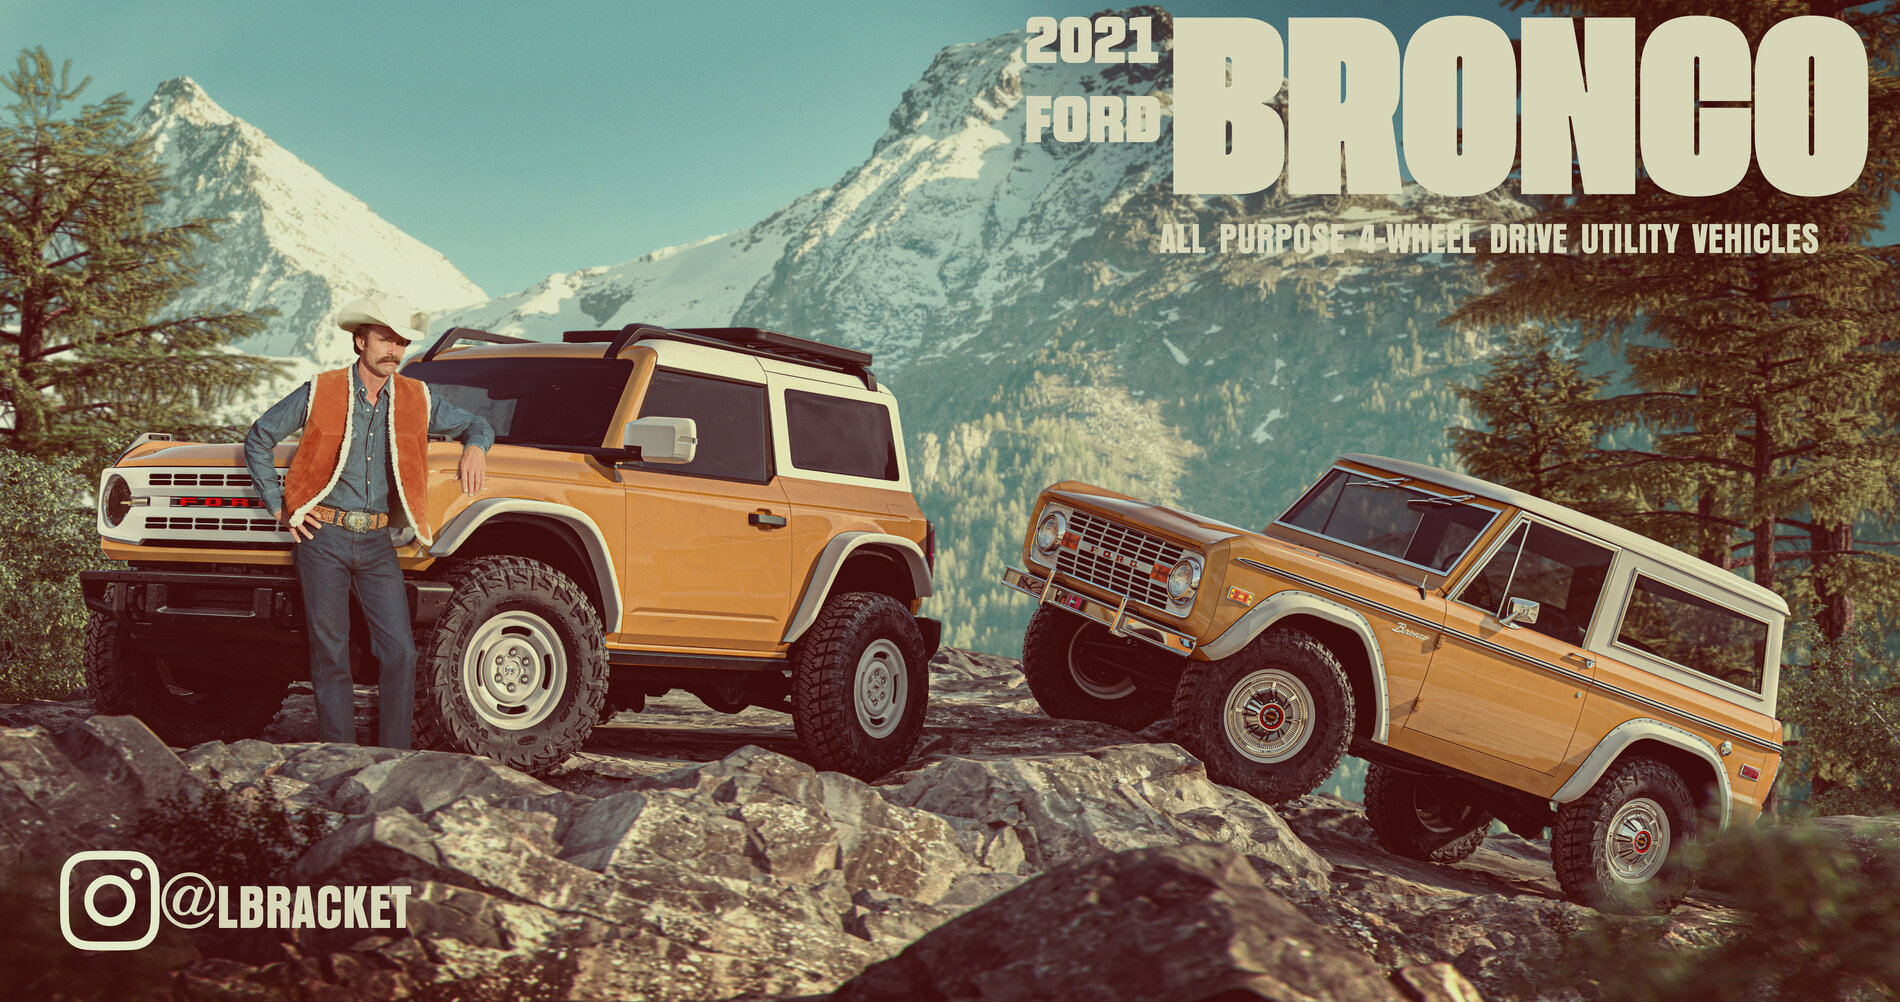 Ford Bronco Bronco Grilles (Including Raptor) Design & Part Number Revealed 010407C7-E585-4341-919D-CF3F0AC7F819